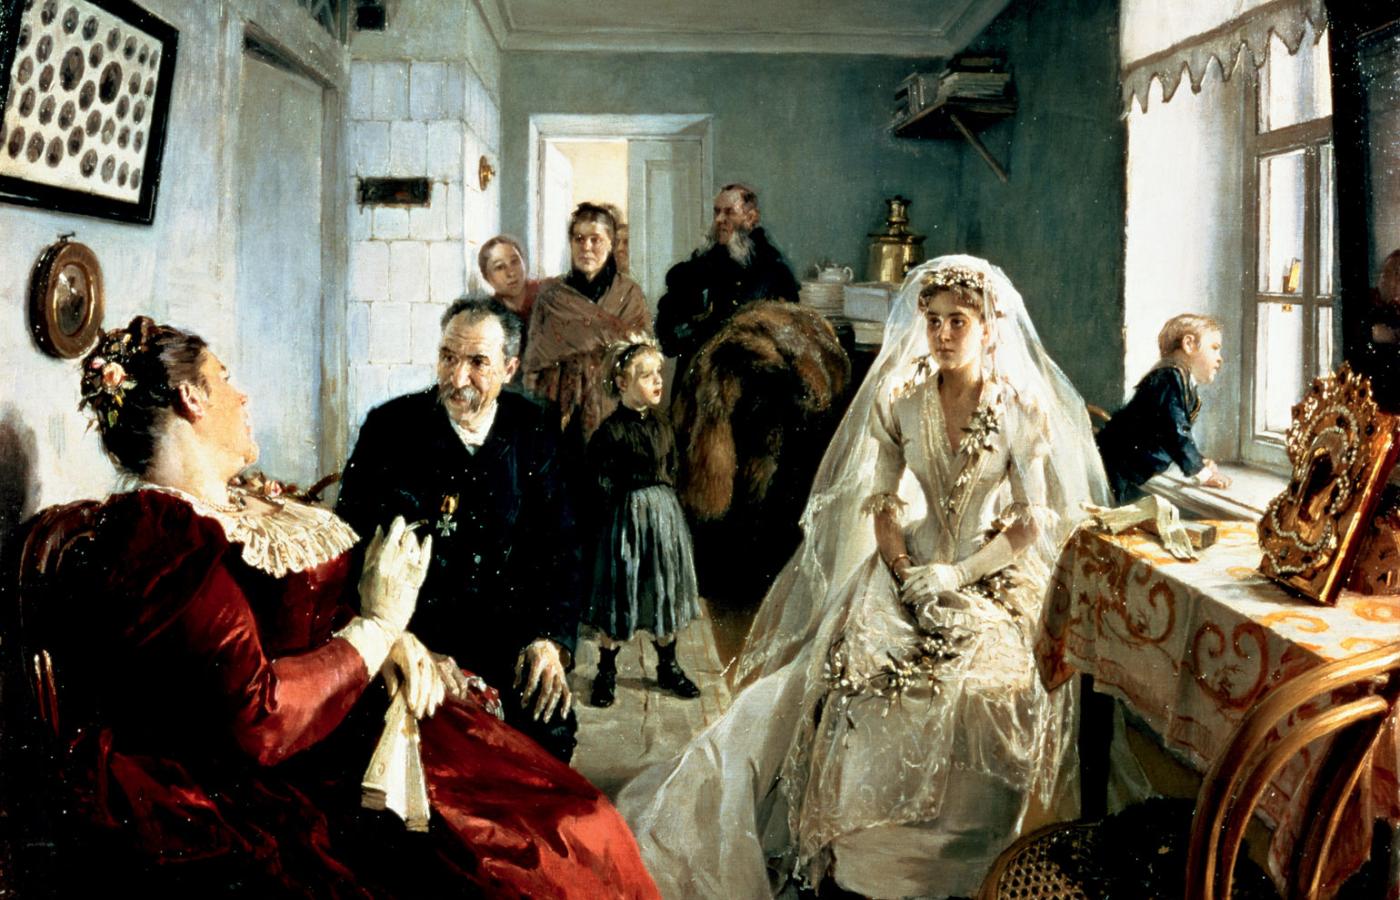 Obraz Iłłariona Prianisznikowa „Przed ślubem”, 1880 r.